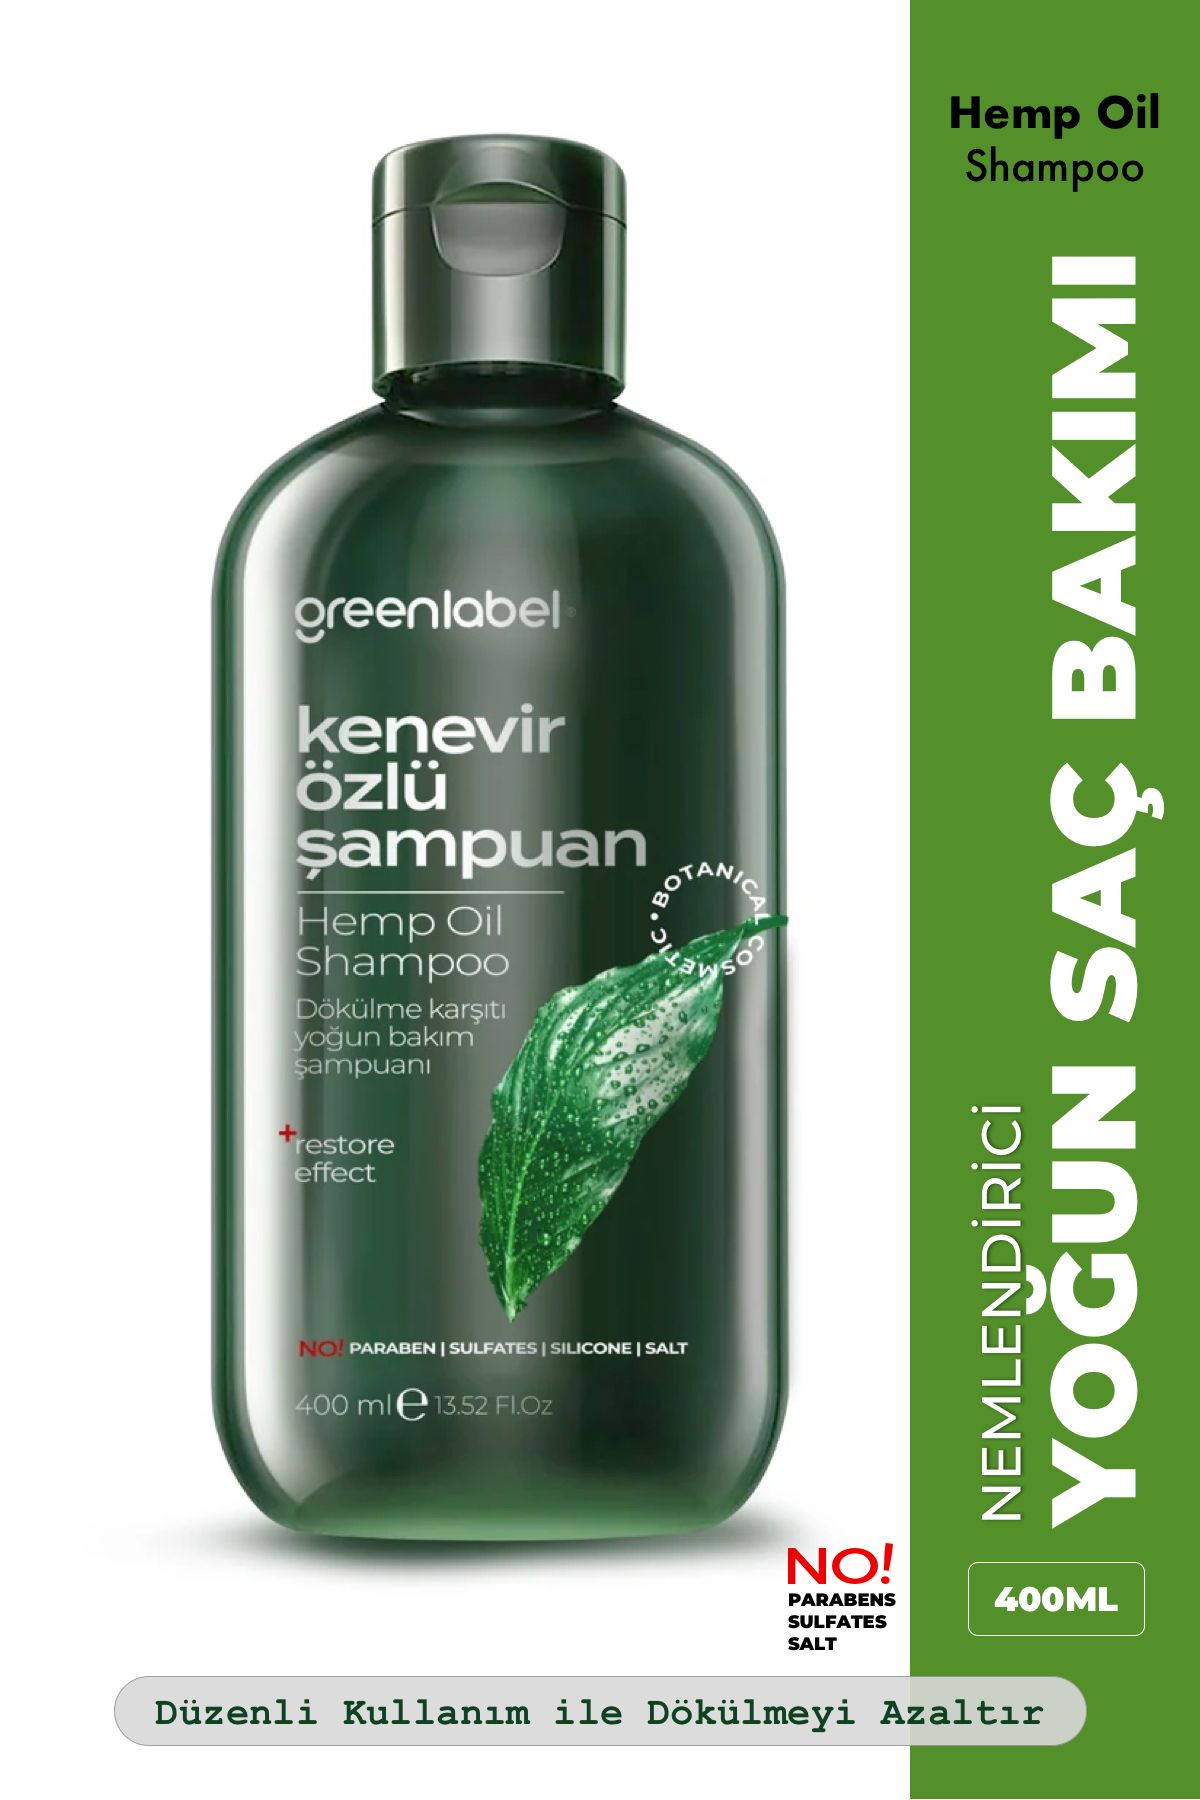 Green Label Greenlabel Kenevir Özlü Tuzsuz Parabensiz Sülfatsız Kepek Karşıtı Bakım Ve Onarım Şampuanı 400ml.